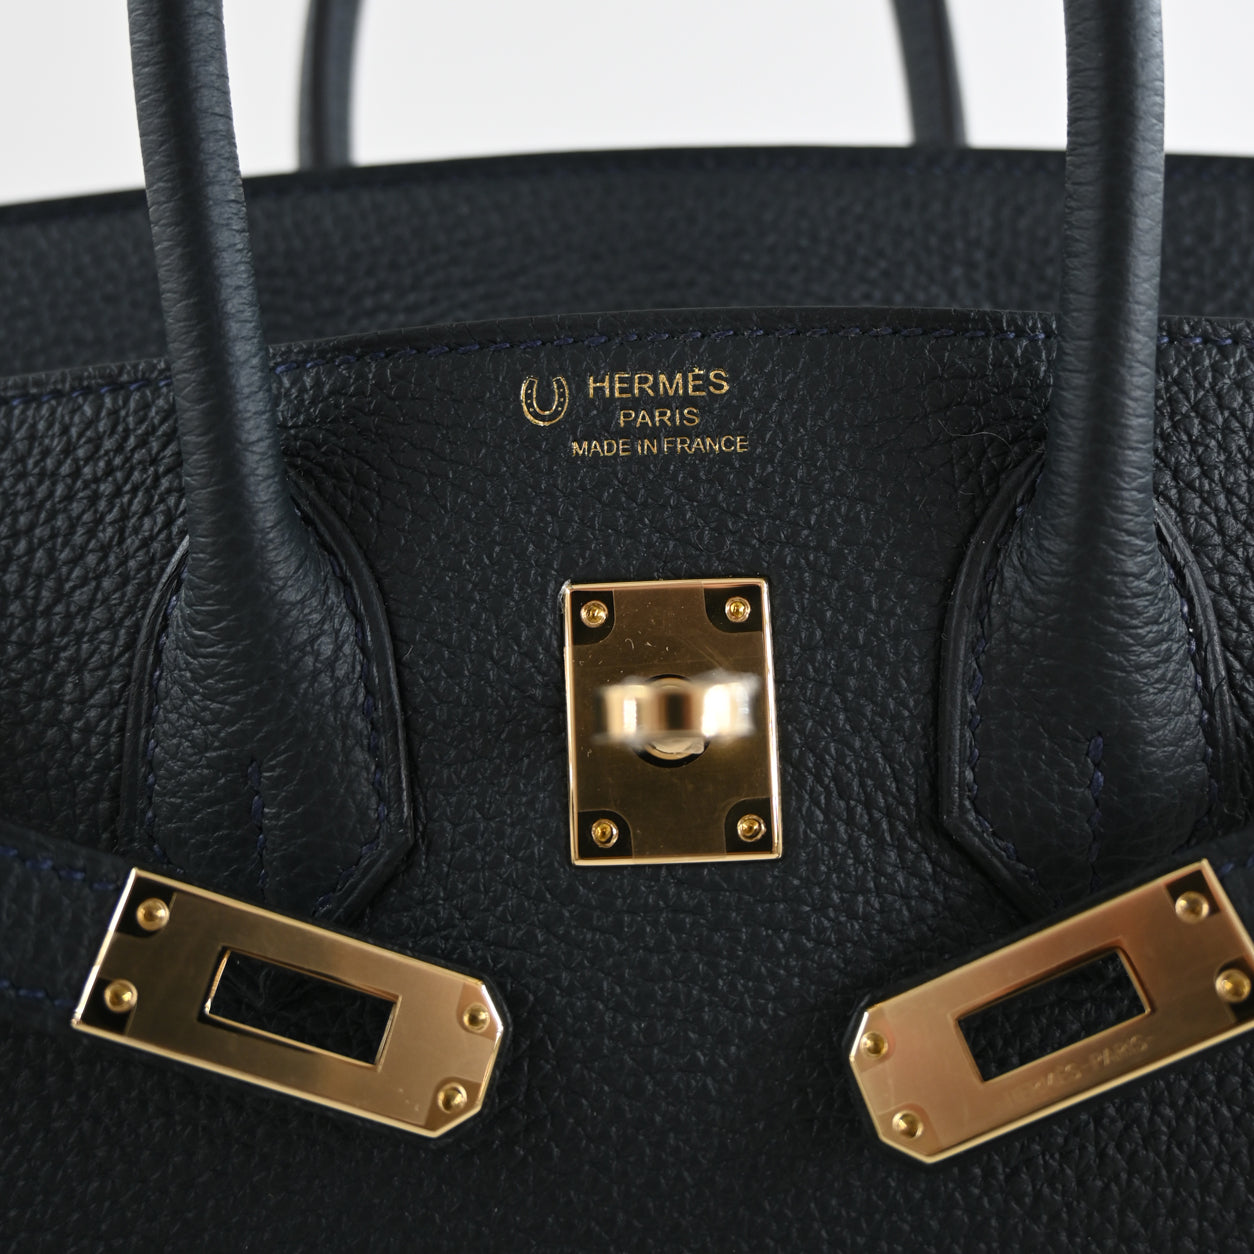 Hermès Birkin 25 Red Vermillion Togo GHW from 100% authentic